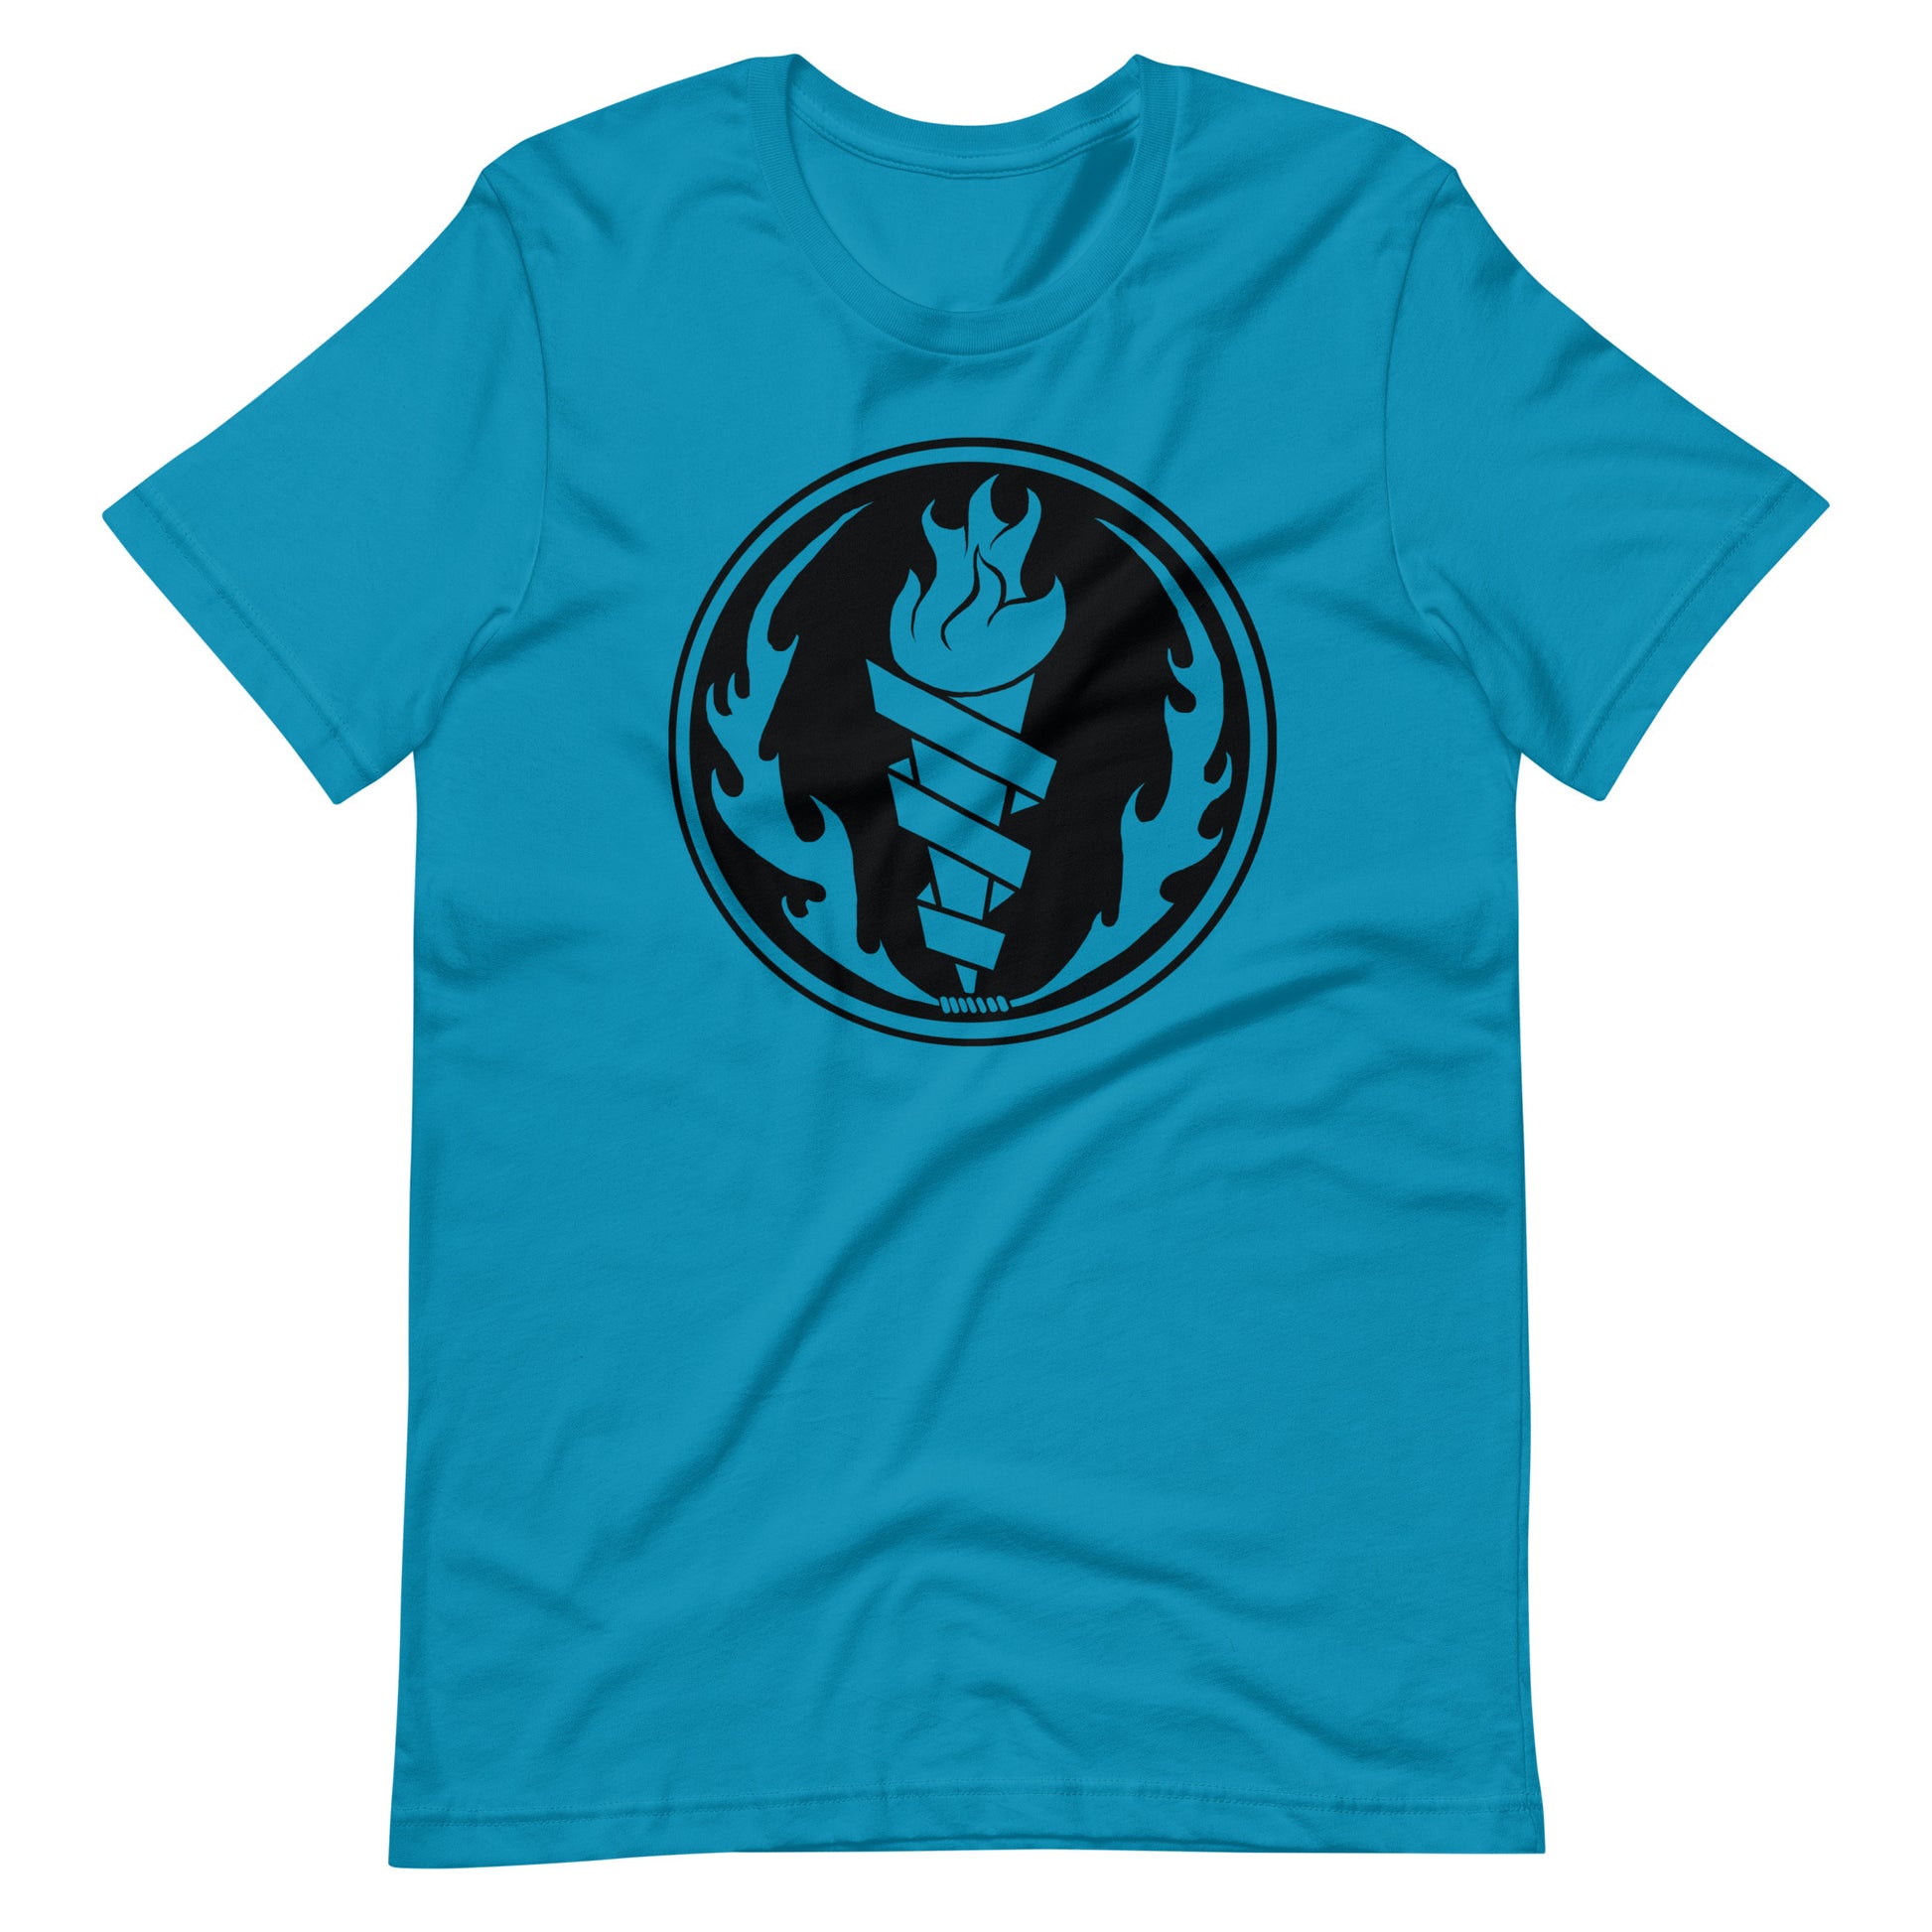 Fire Fire Black - Men's t-shirt - Aqua Front